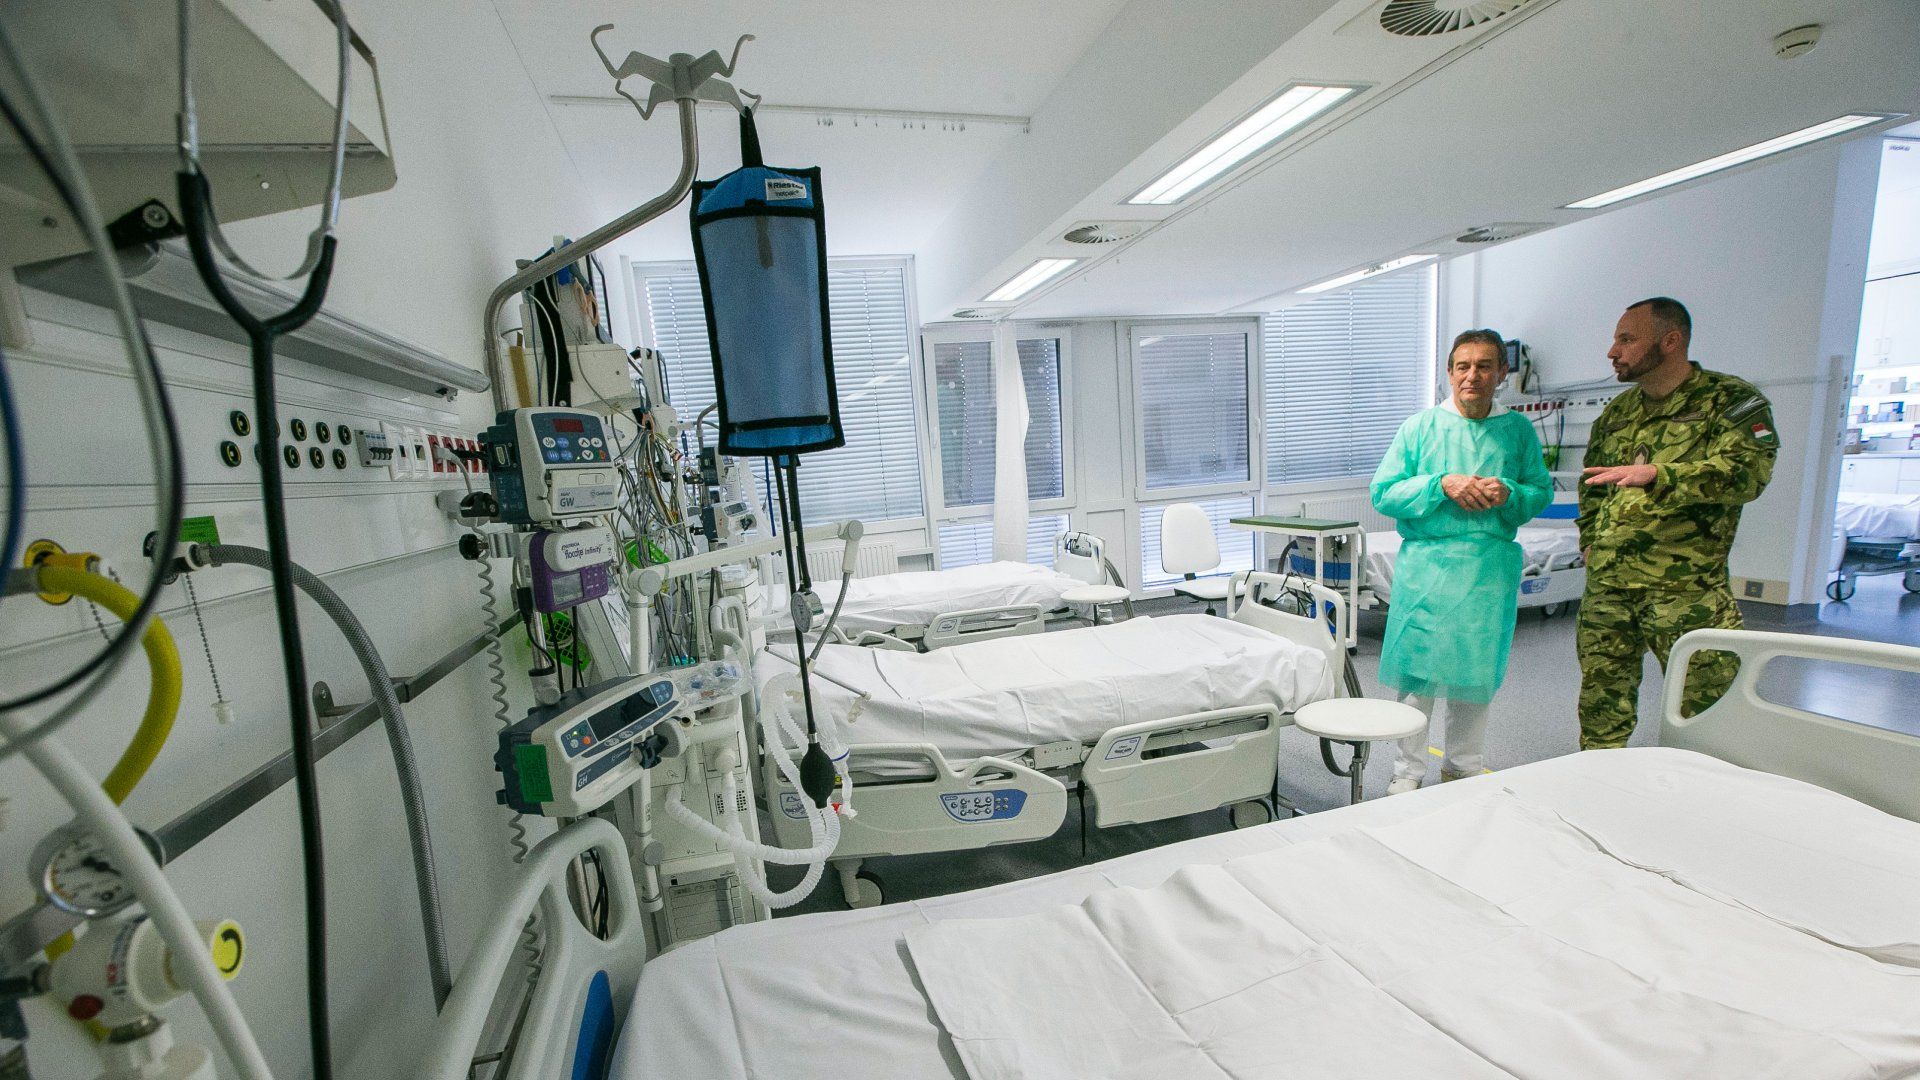 A kép illusztráció. Dr. Svébis Mihály (b), a Bács-Kiskun Megyei Kórház főigazgatója és Söröli Róbert őrnagy, kórházparancsnok a Bács-Kiskun Megyei Kórház koronavírus-fertőzések ellátására kijelölt intenzív osztály felkészültségét ellenőrzi Kecskeméten 2020. április 8-án (Fotó: MTI/Bús Csaba)